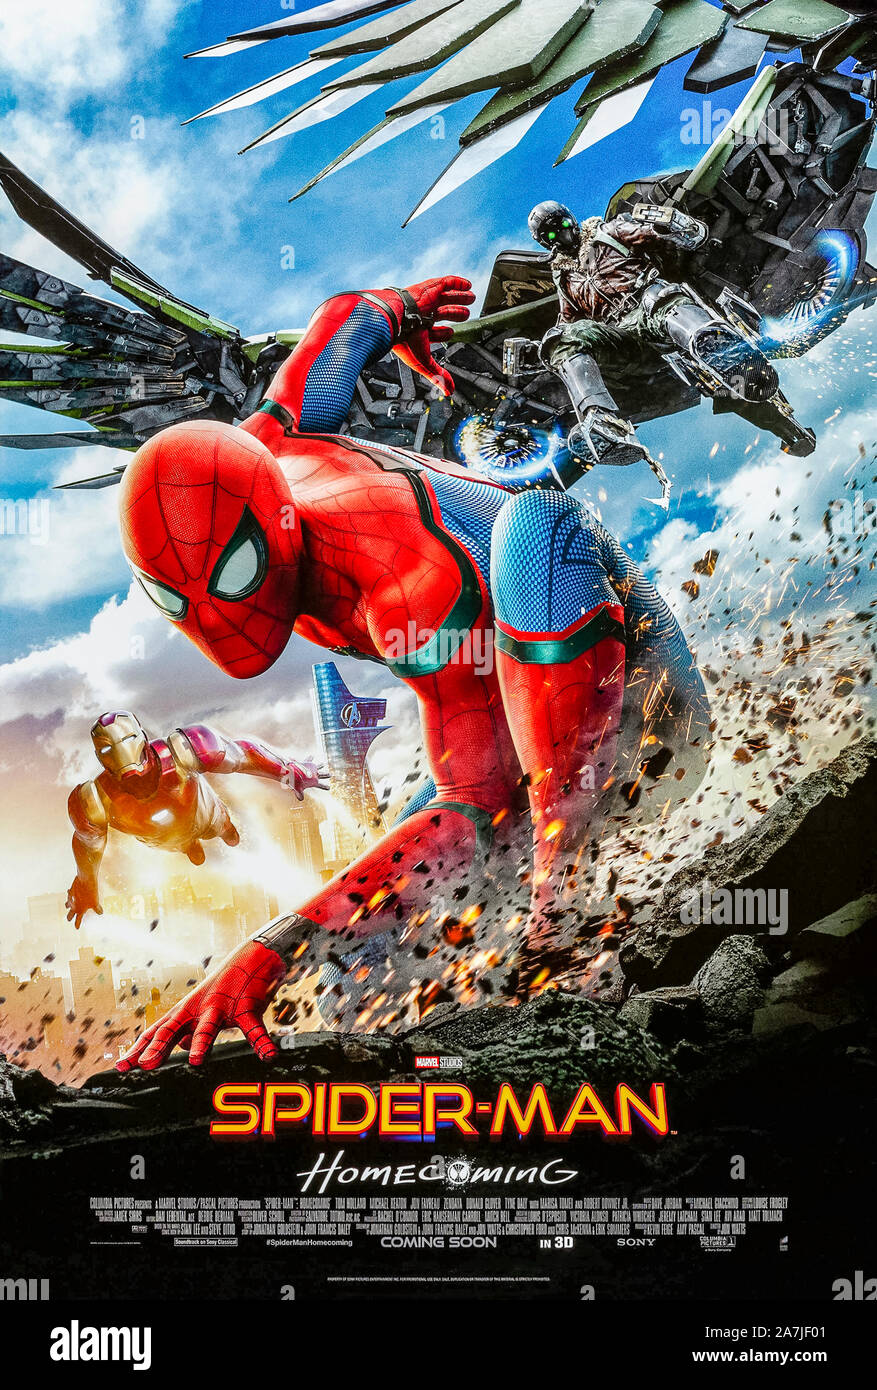 Spider-Man Homecoming (2017) diretto da Jon Watts e interpretato da Tom Holland, Michael Keaton e Robert Downey Jr. Peter Parker prende il Vulture e la sua tecnologia aliena. Foto Stock